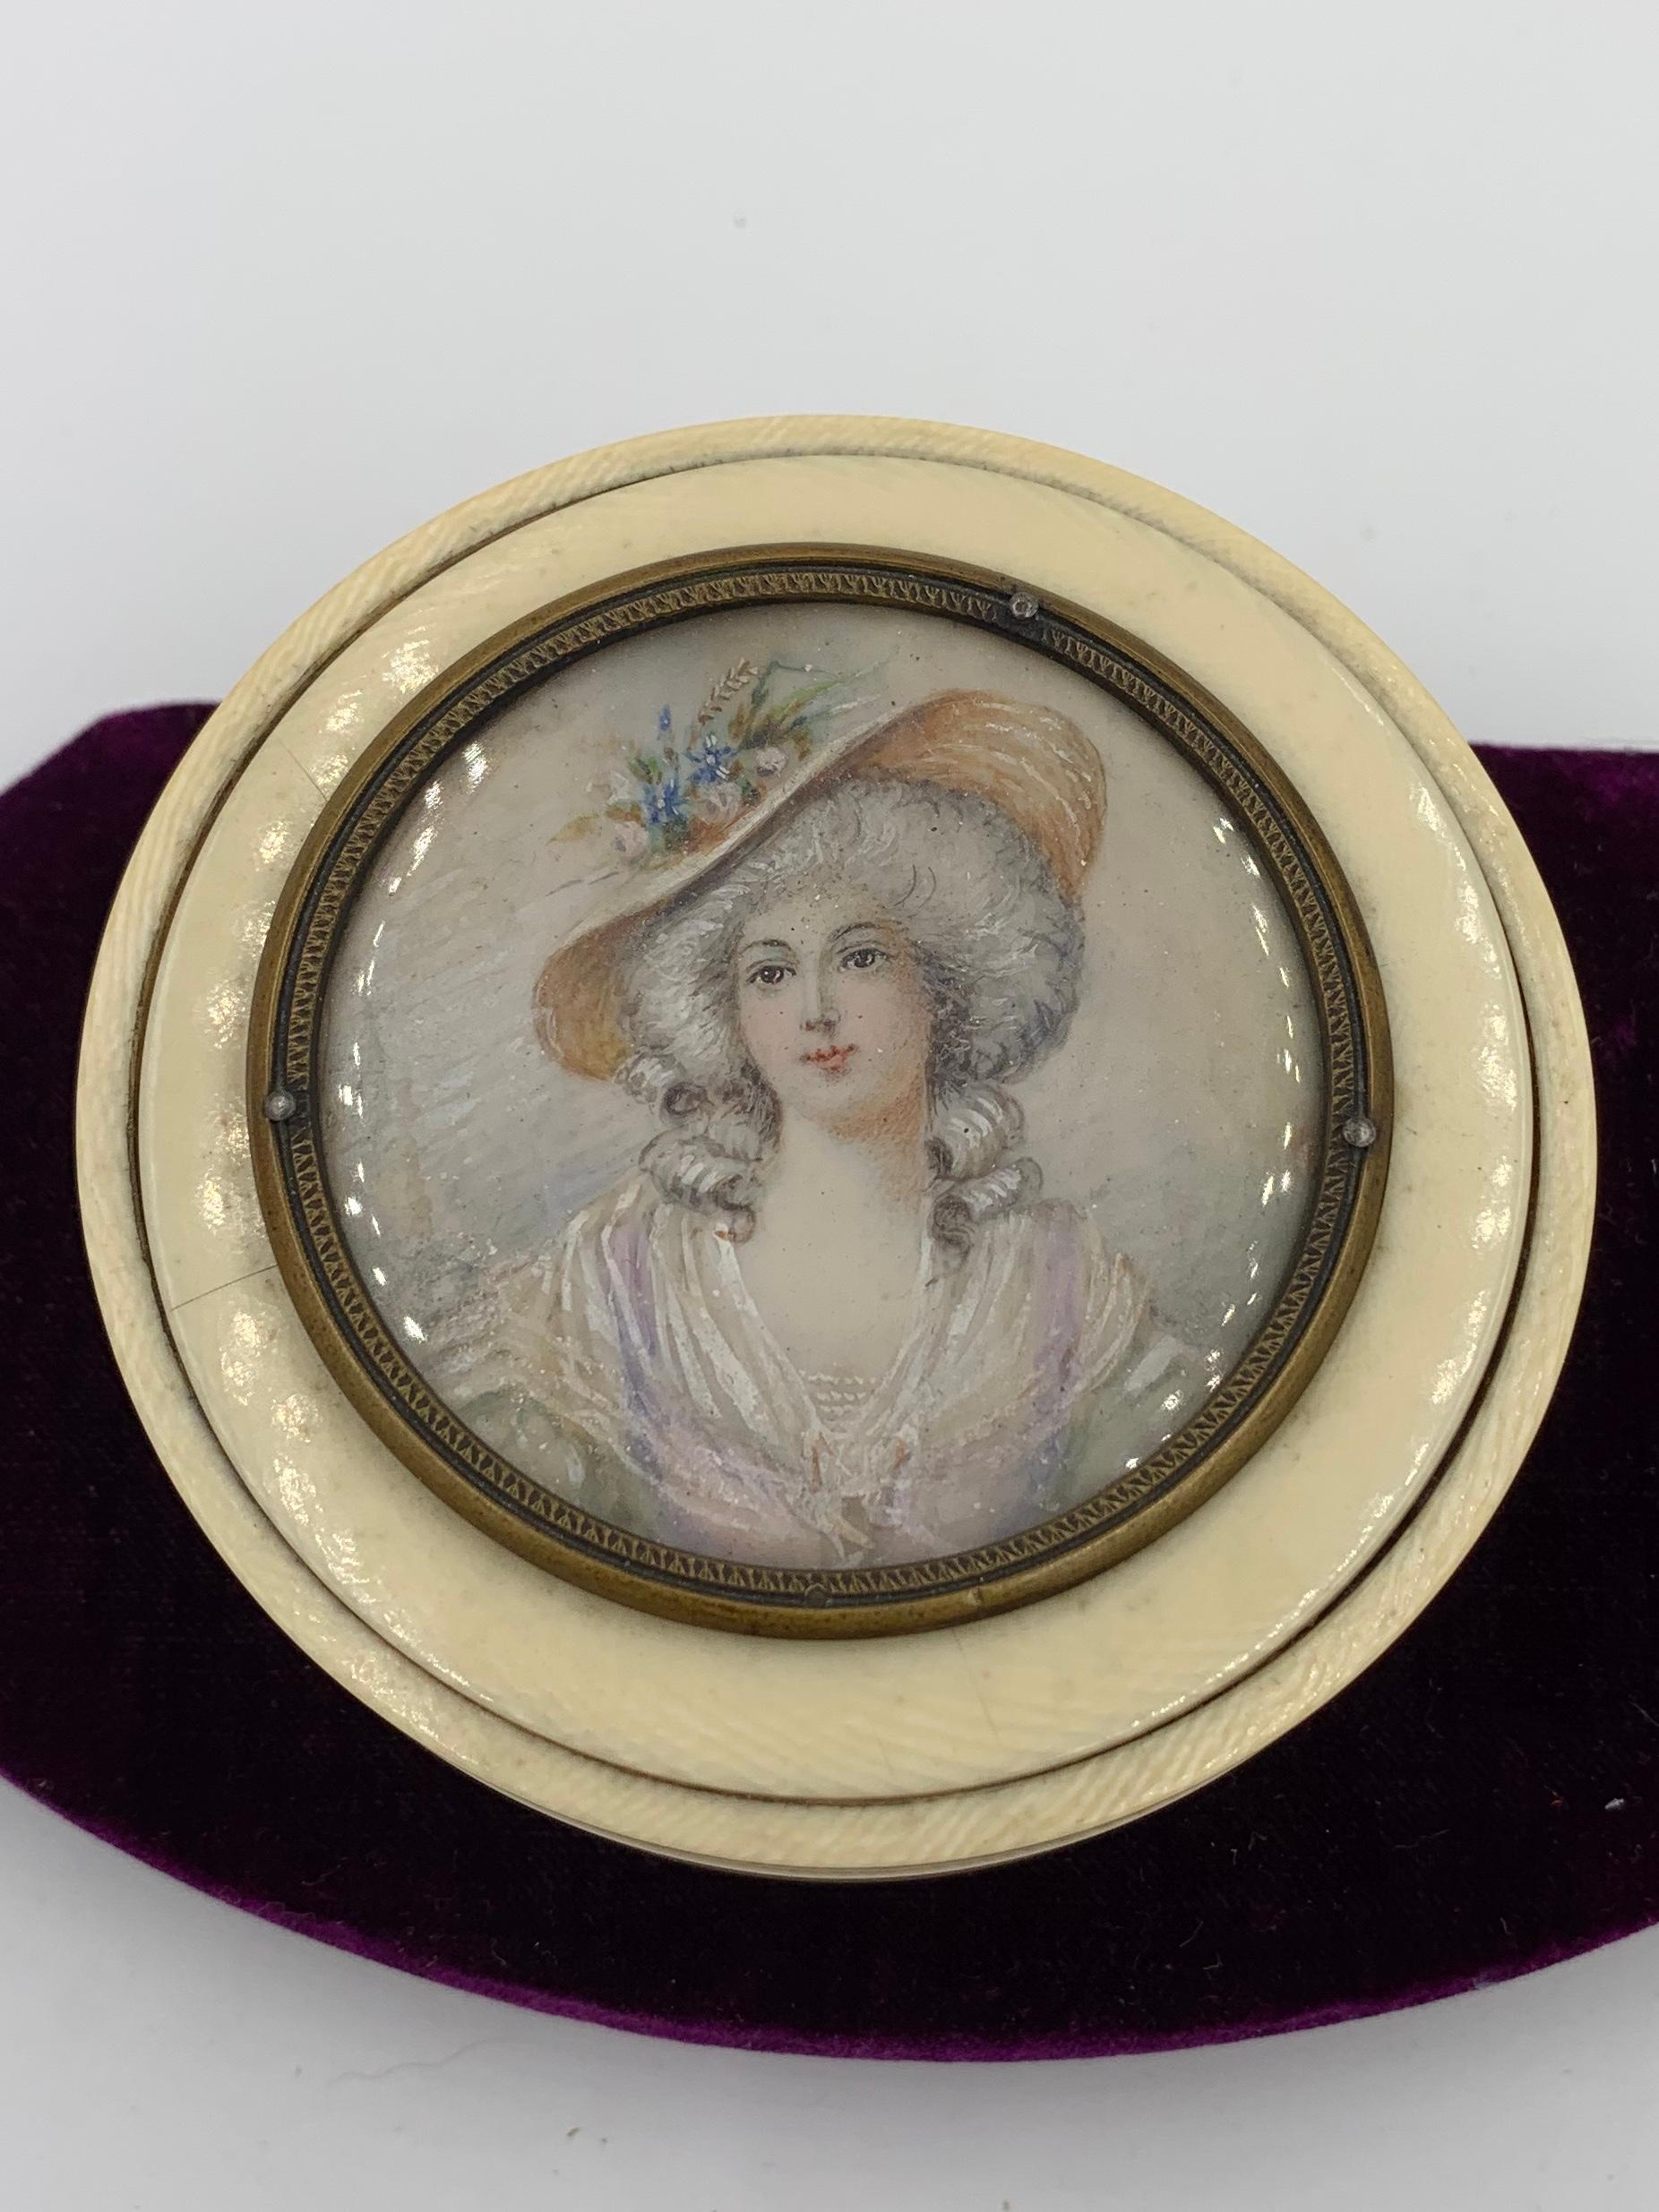 Une belle boîte de commode avec un portrait miniature peint à la main d'une femme avec son chapeau.  La miniature est superbement réalisée, avec un visage ravissant, un chapeau magnifique et une robe diaphane étonnante.  La qualité de la peinture